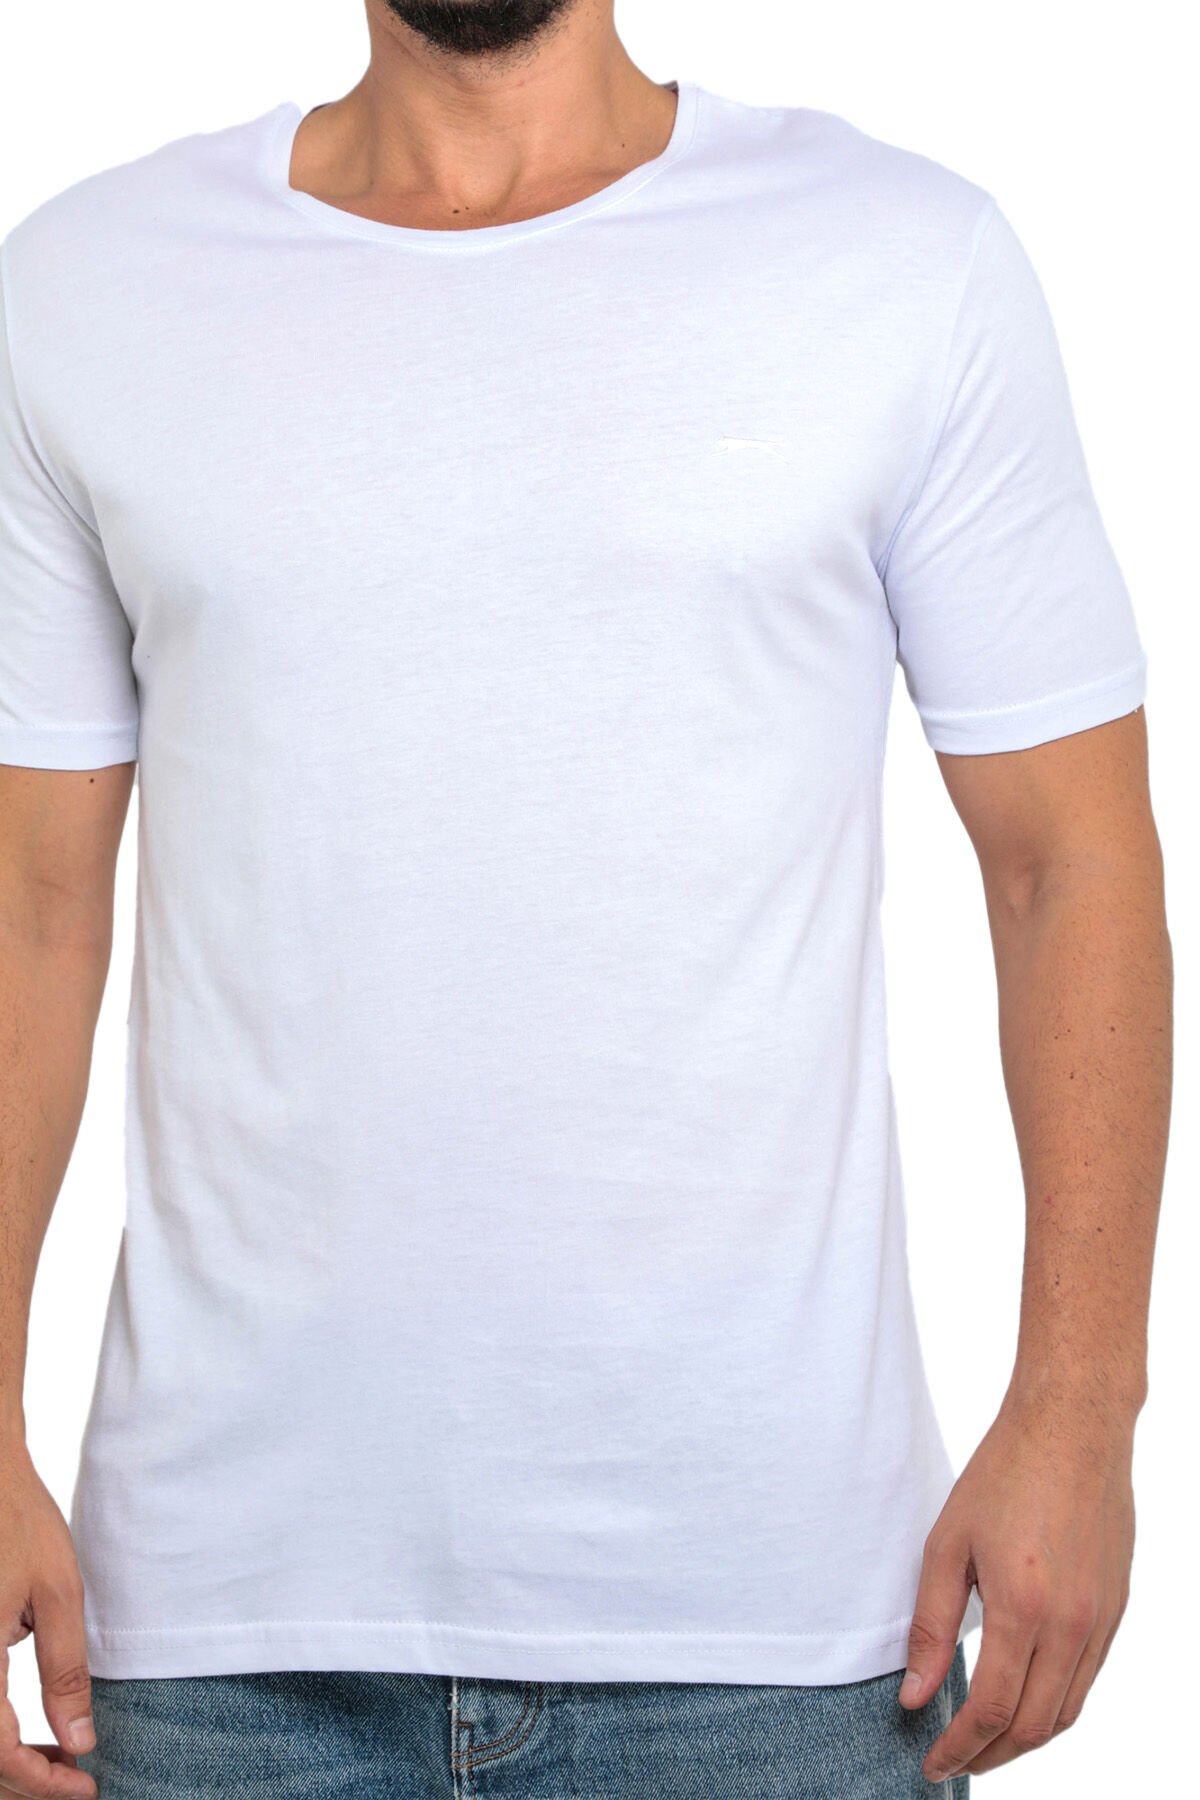 SANDER KTN Büyük Beden Erkek Kısa Kollu T-Shirt Beyaz - Thumbnail